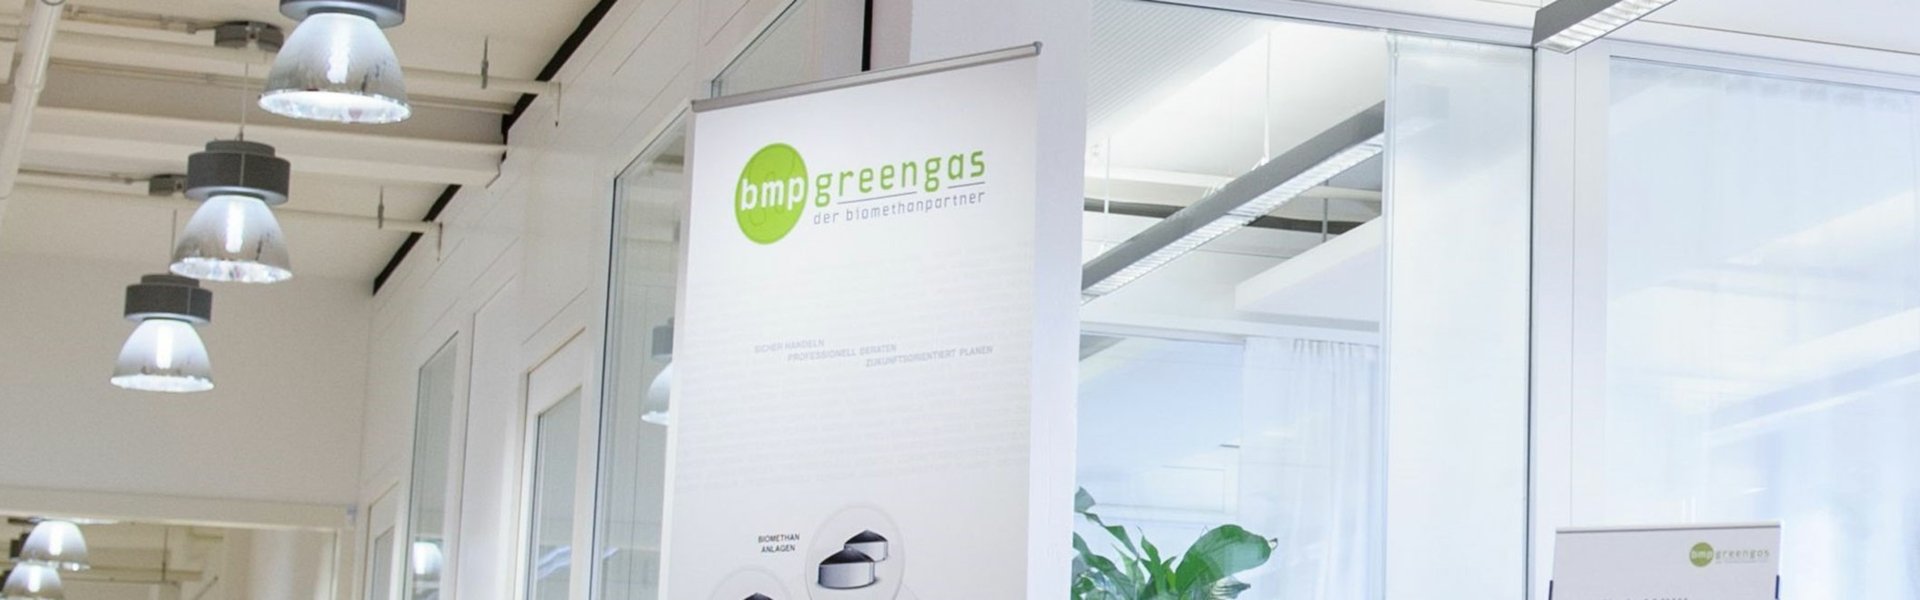 Ein Aufsteller von Beteiligung bmp greengas in einem Bürogebäude neben dem Empfang